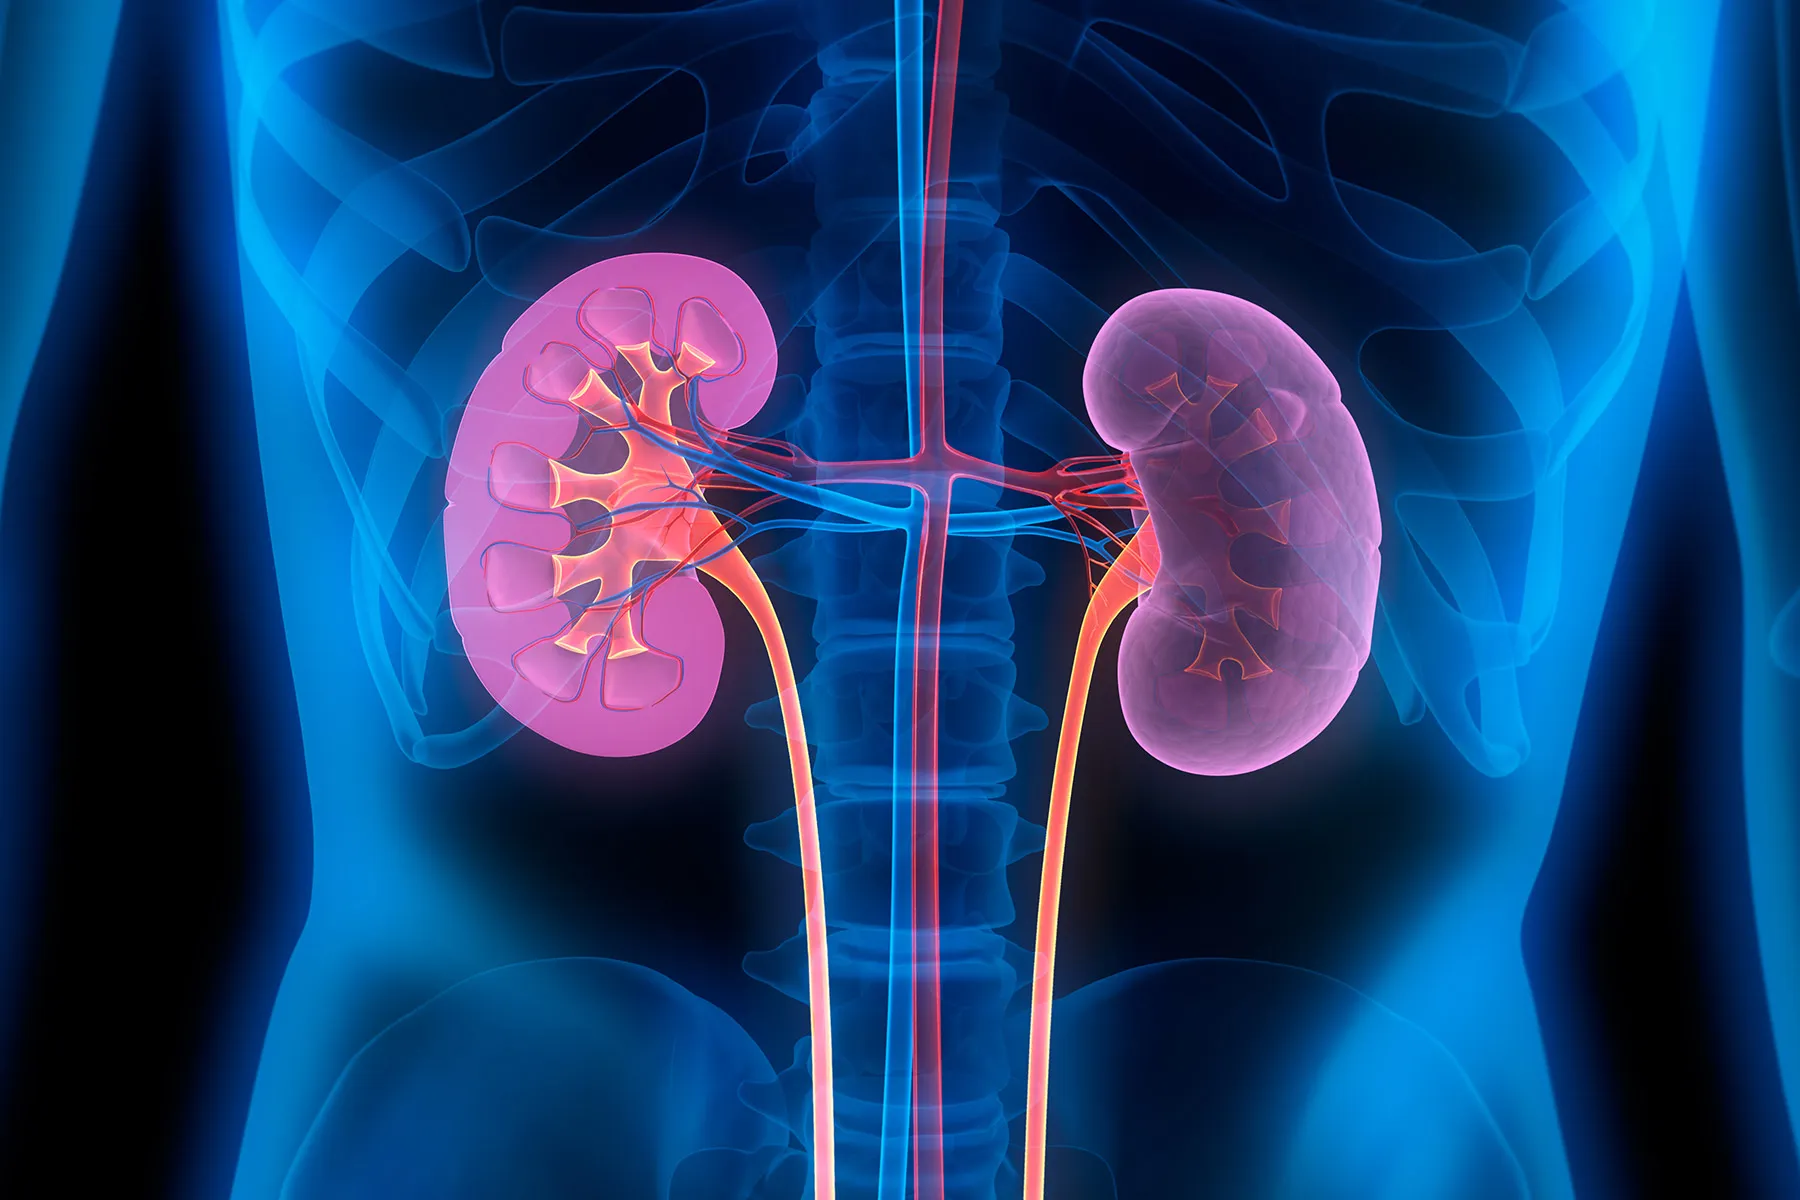 illustration of kidneys